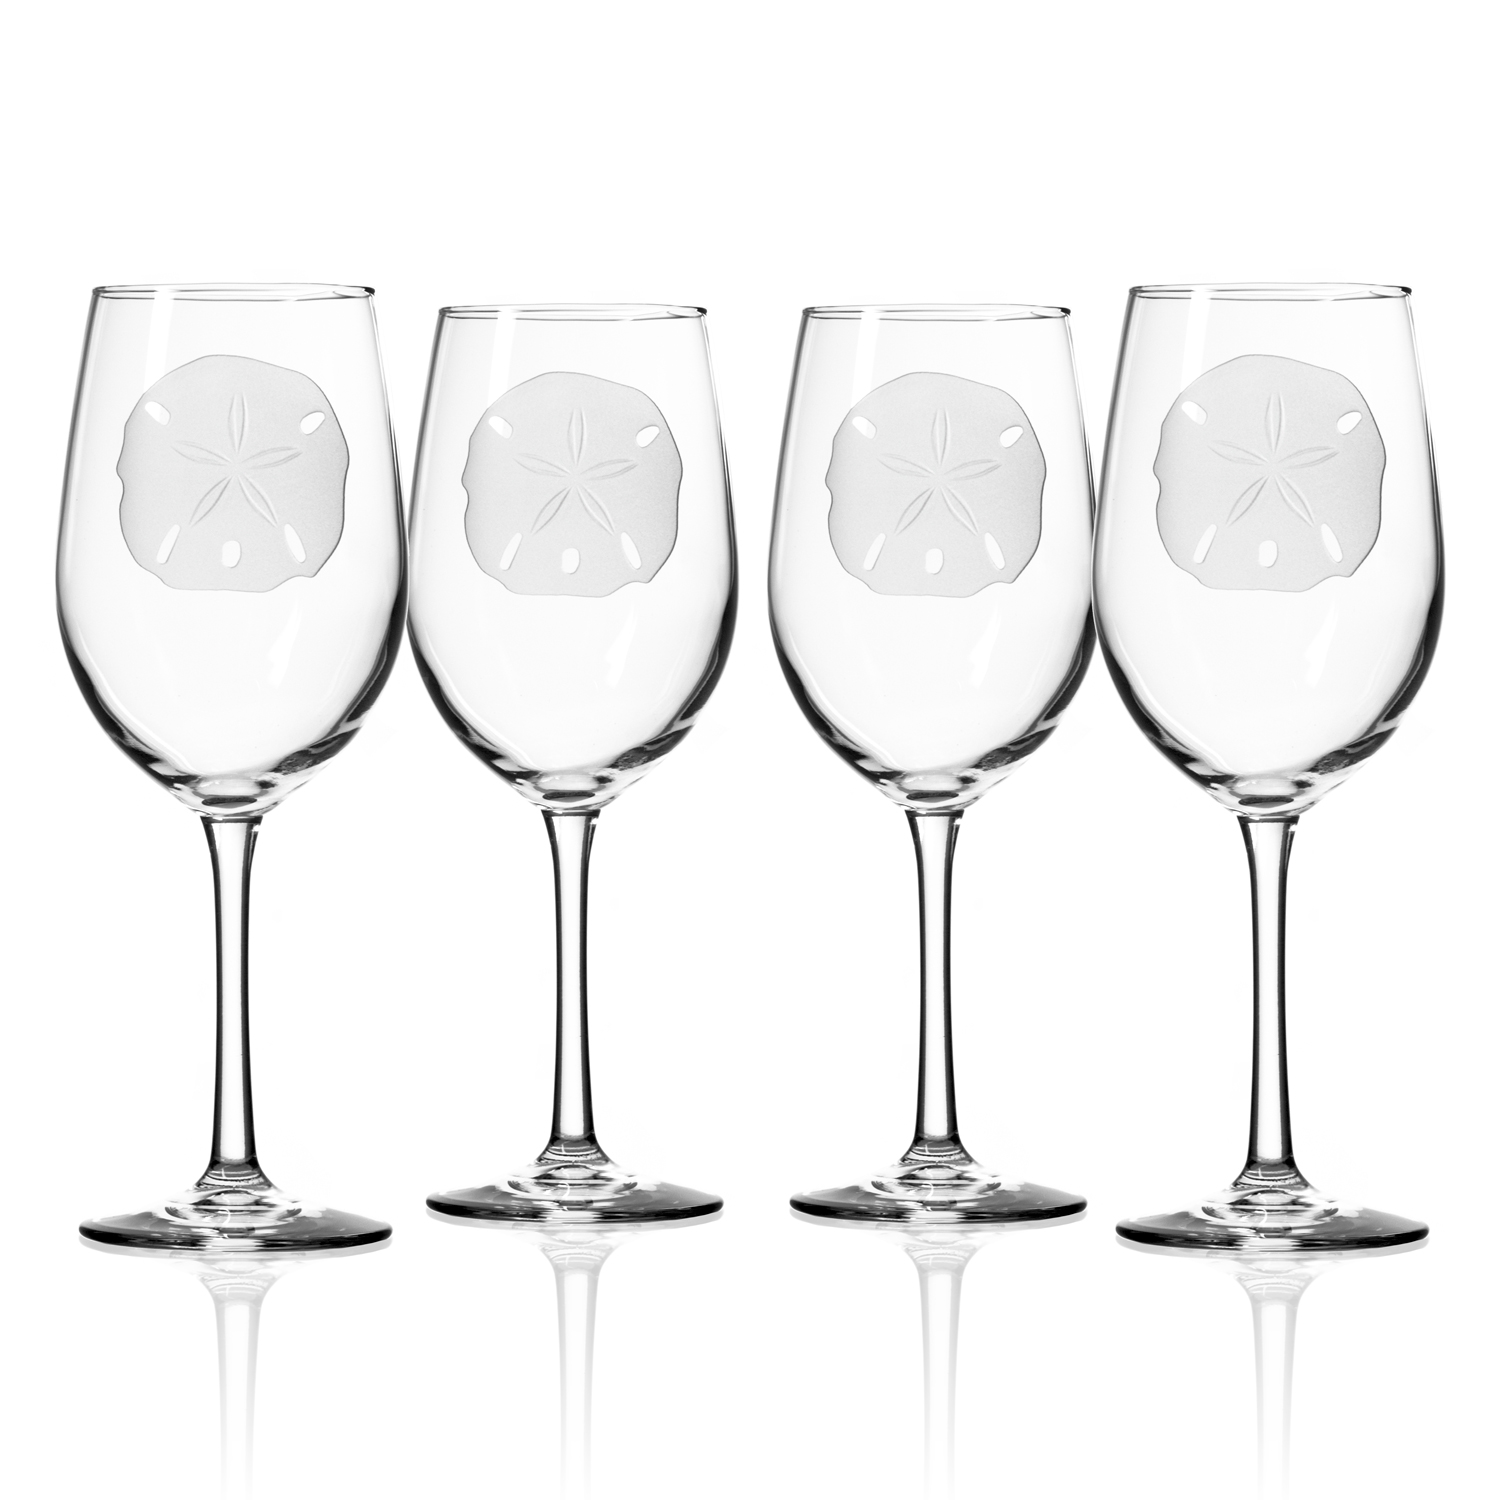 Whale Large Wine Glasses S/4Beach Decor Shop